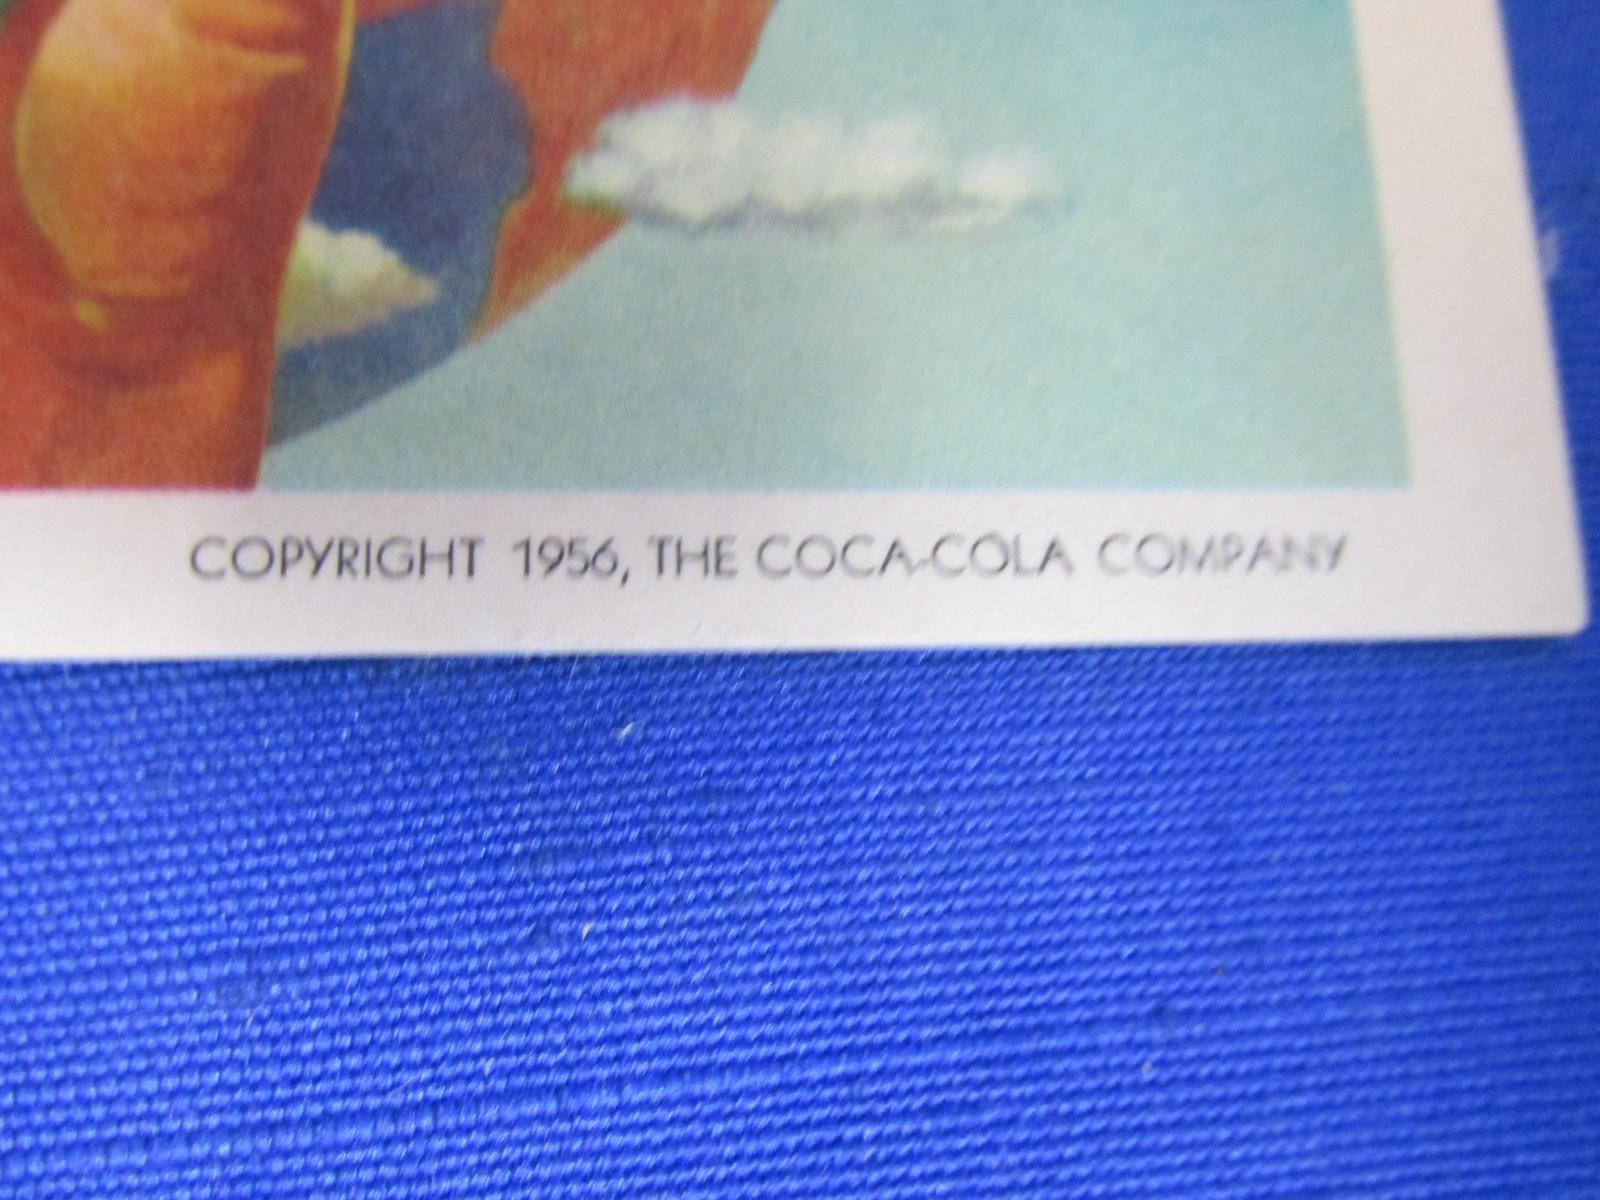 3 Vintage Coca Cola Blotters: 1956 (2 Designs) & 1960